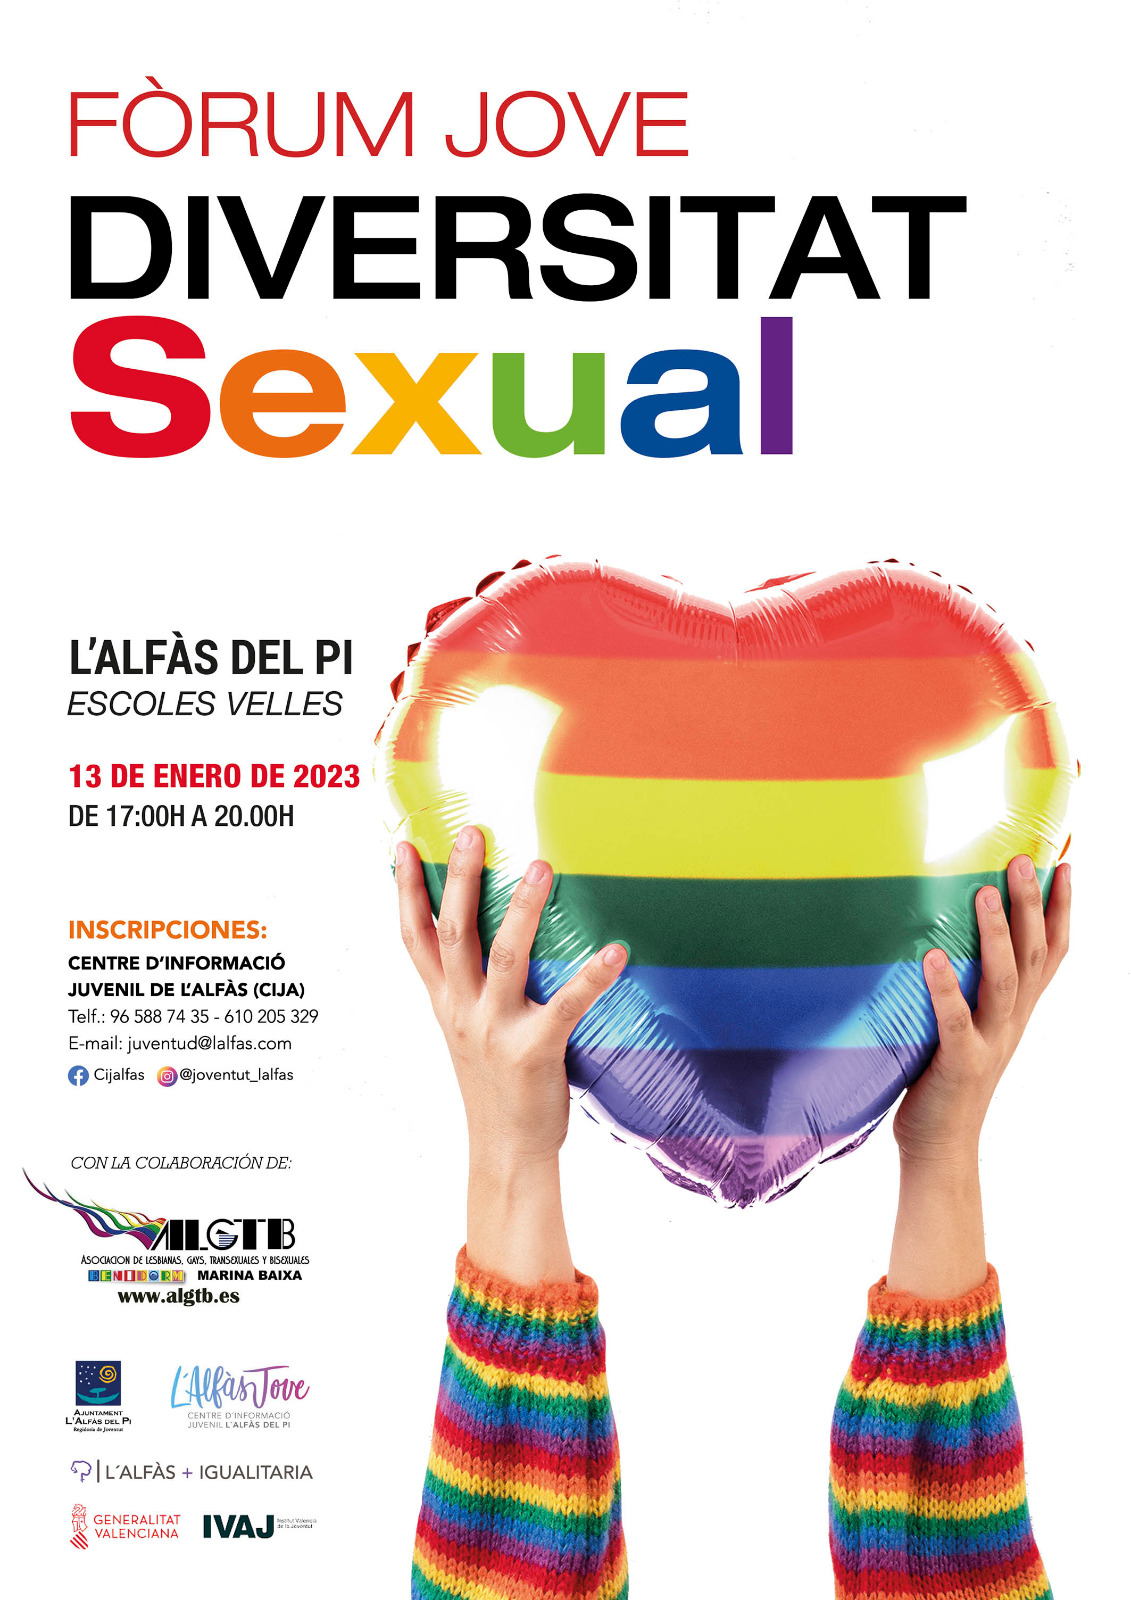 El Espai Cultural Escoles Velles acoge mañana un Fòrum Jove sobre diversidad sexual